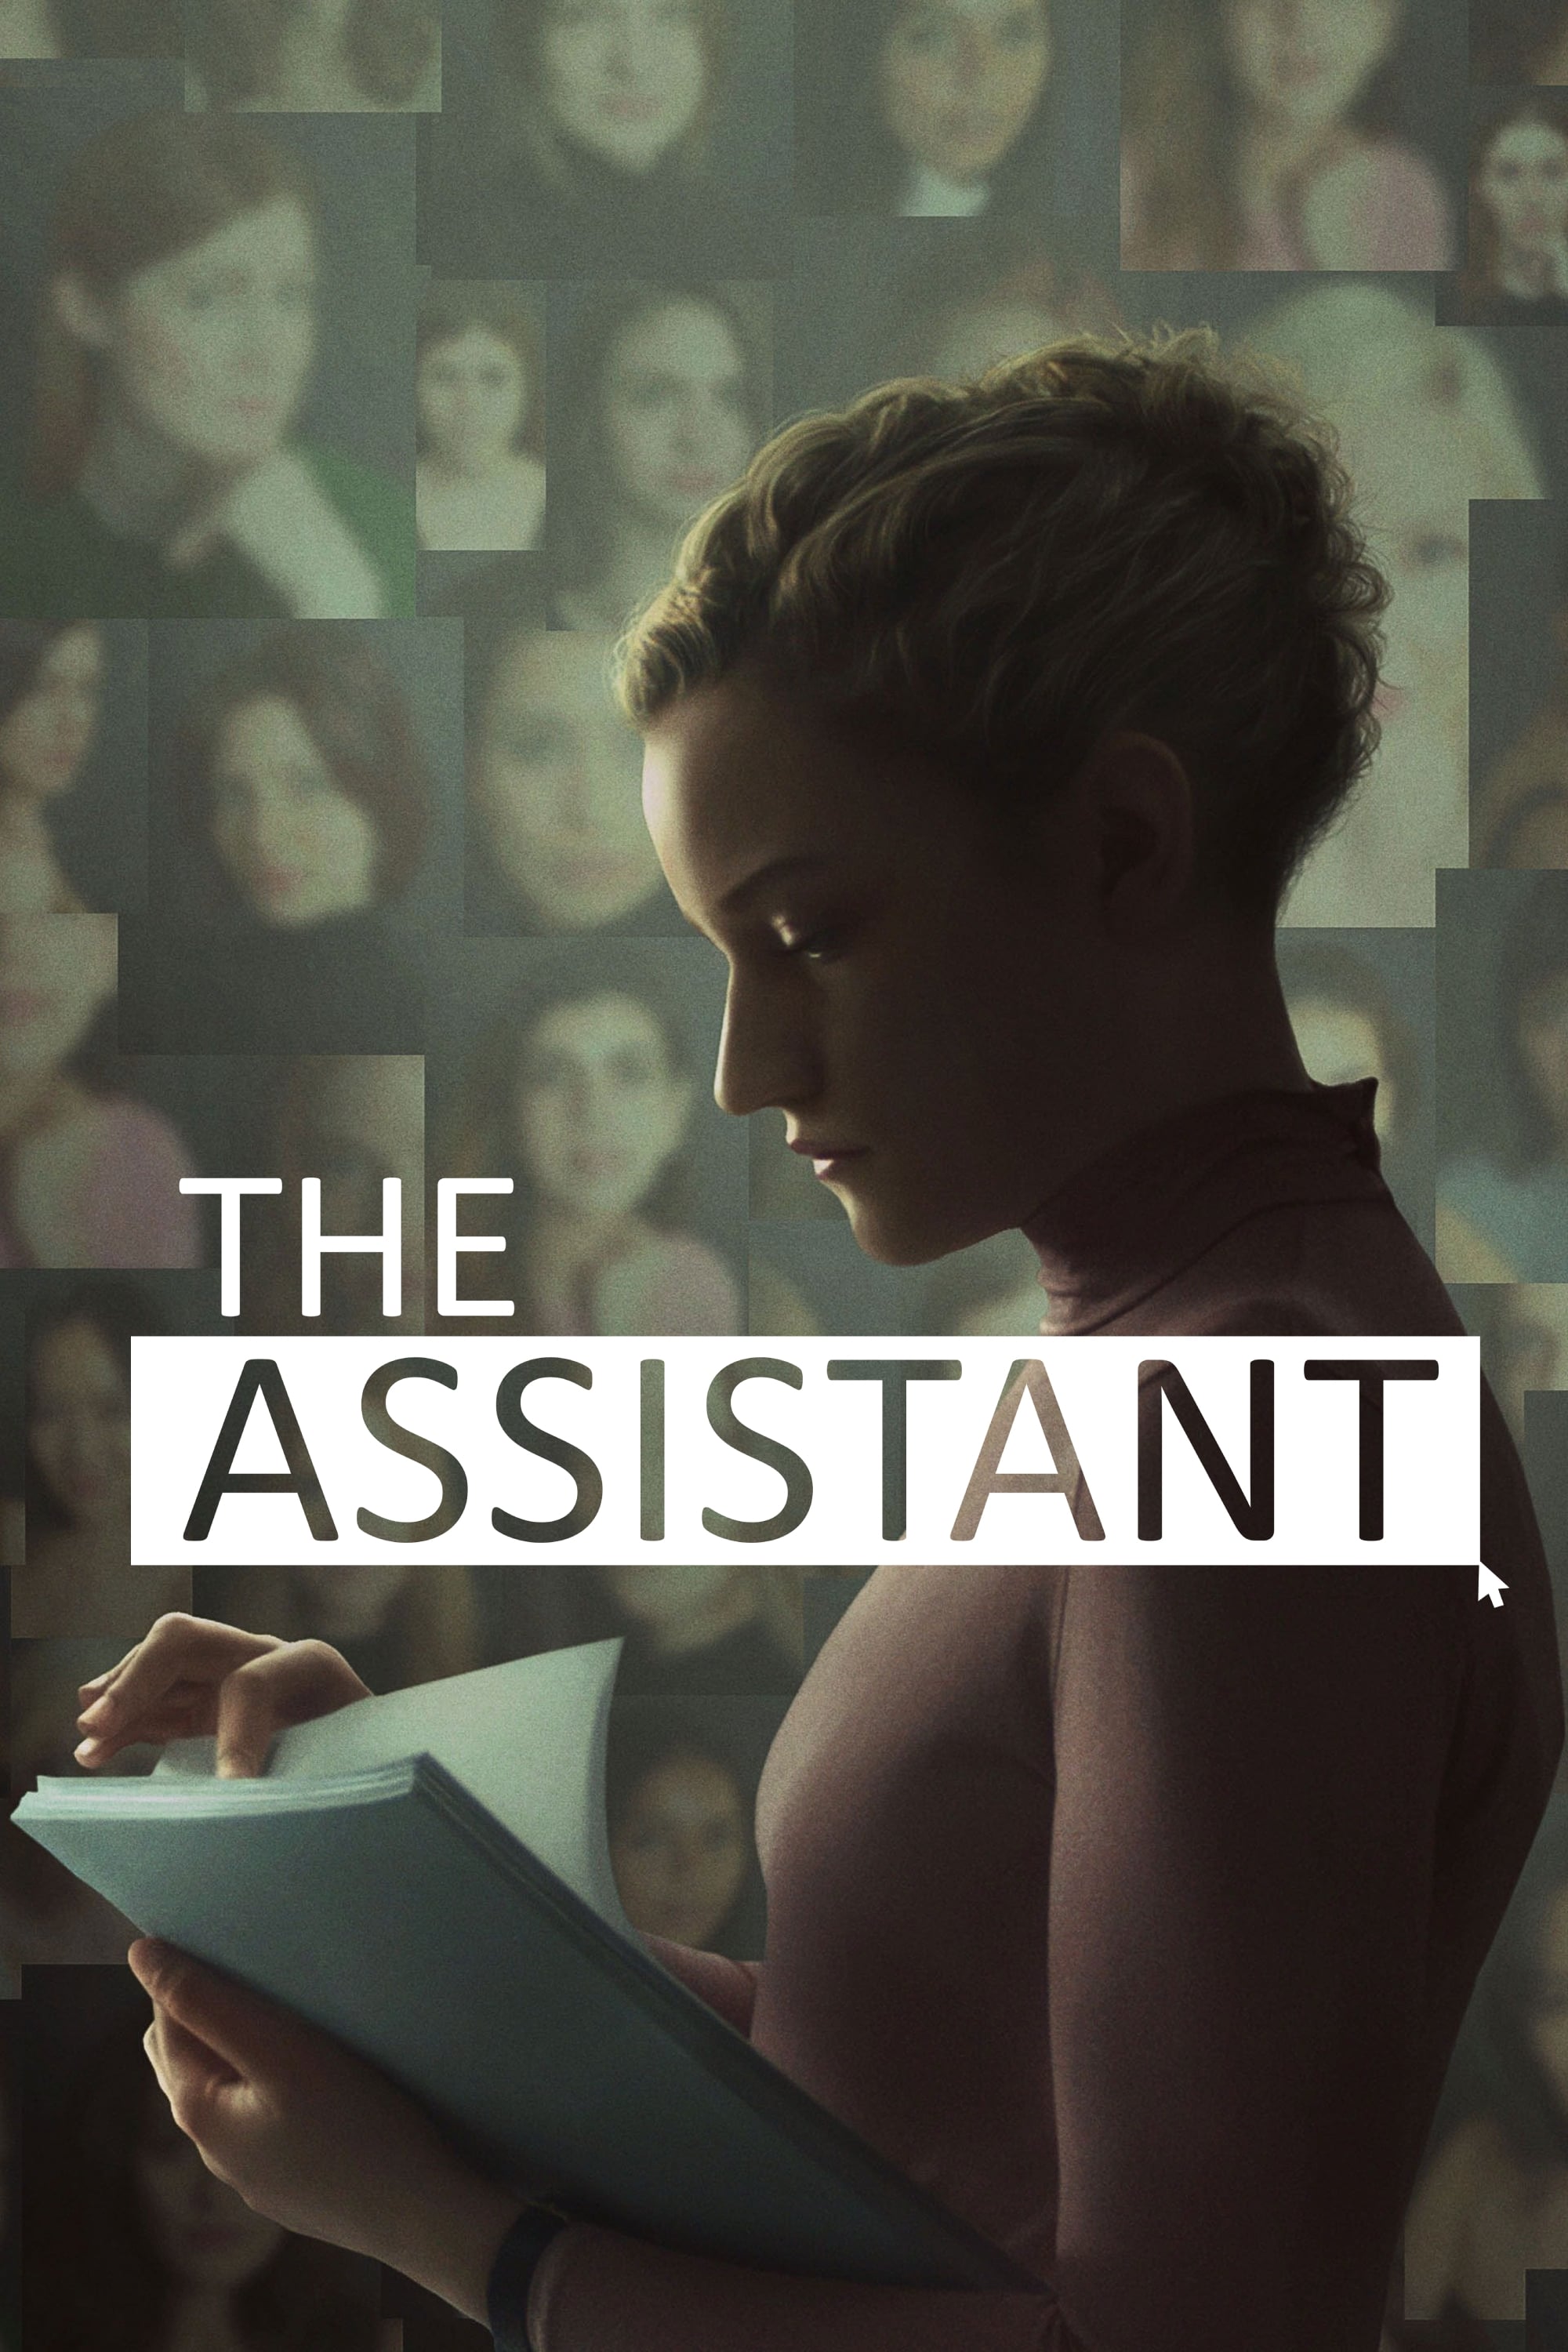 A Assistente